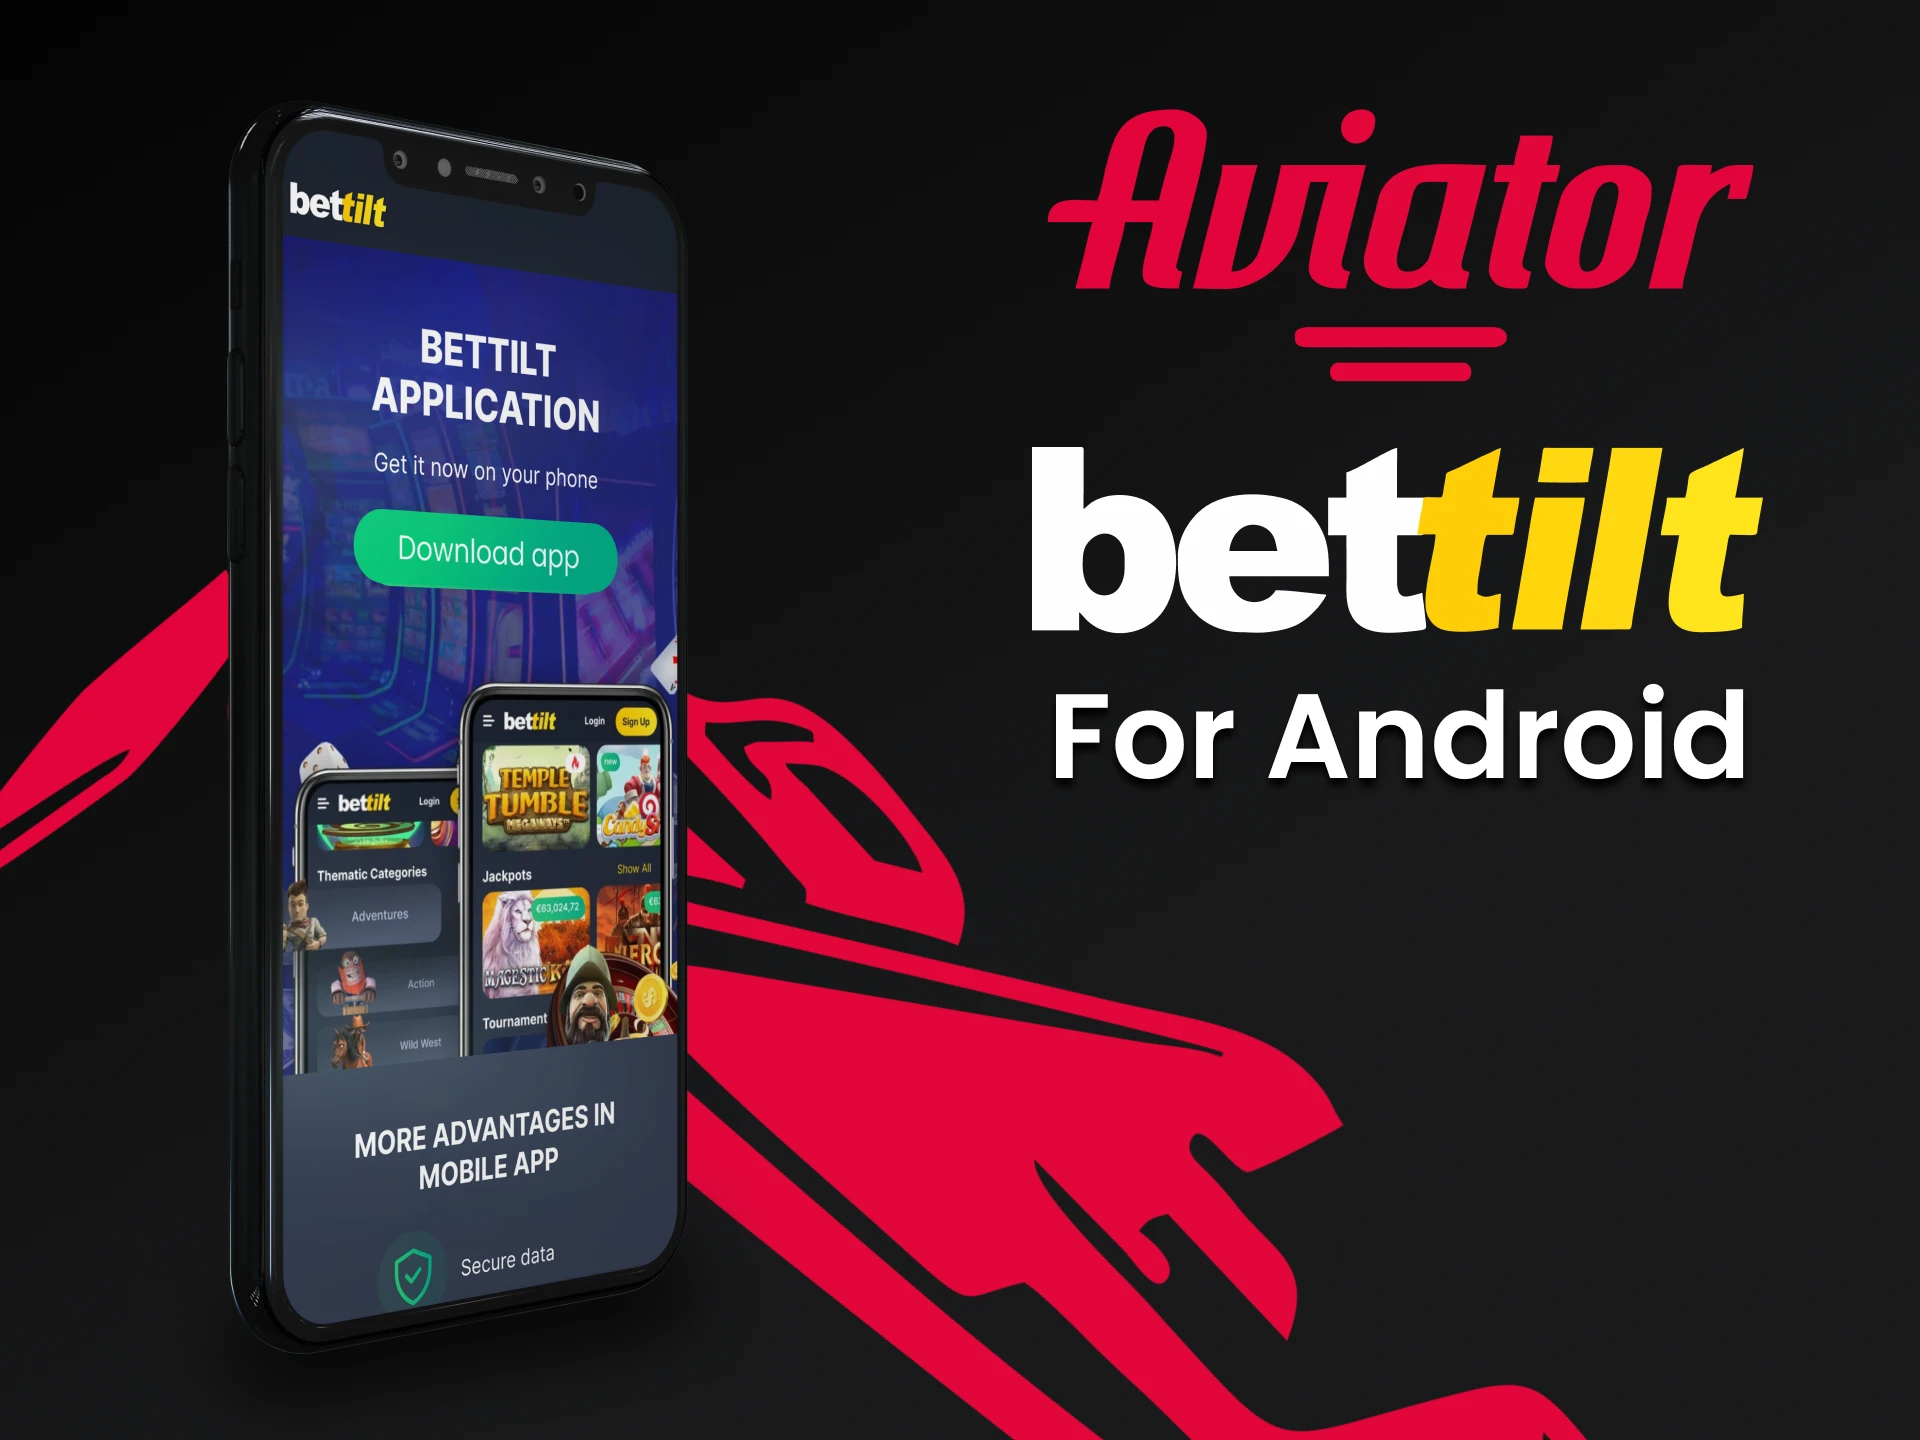  Baixe o Bettilt no Android para jogar o Aviator.